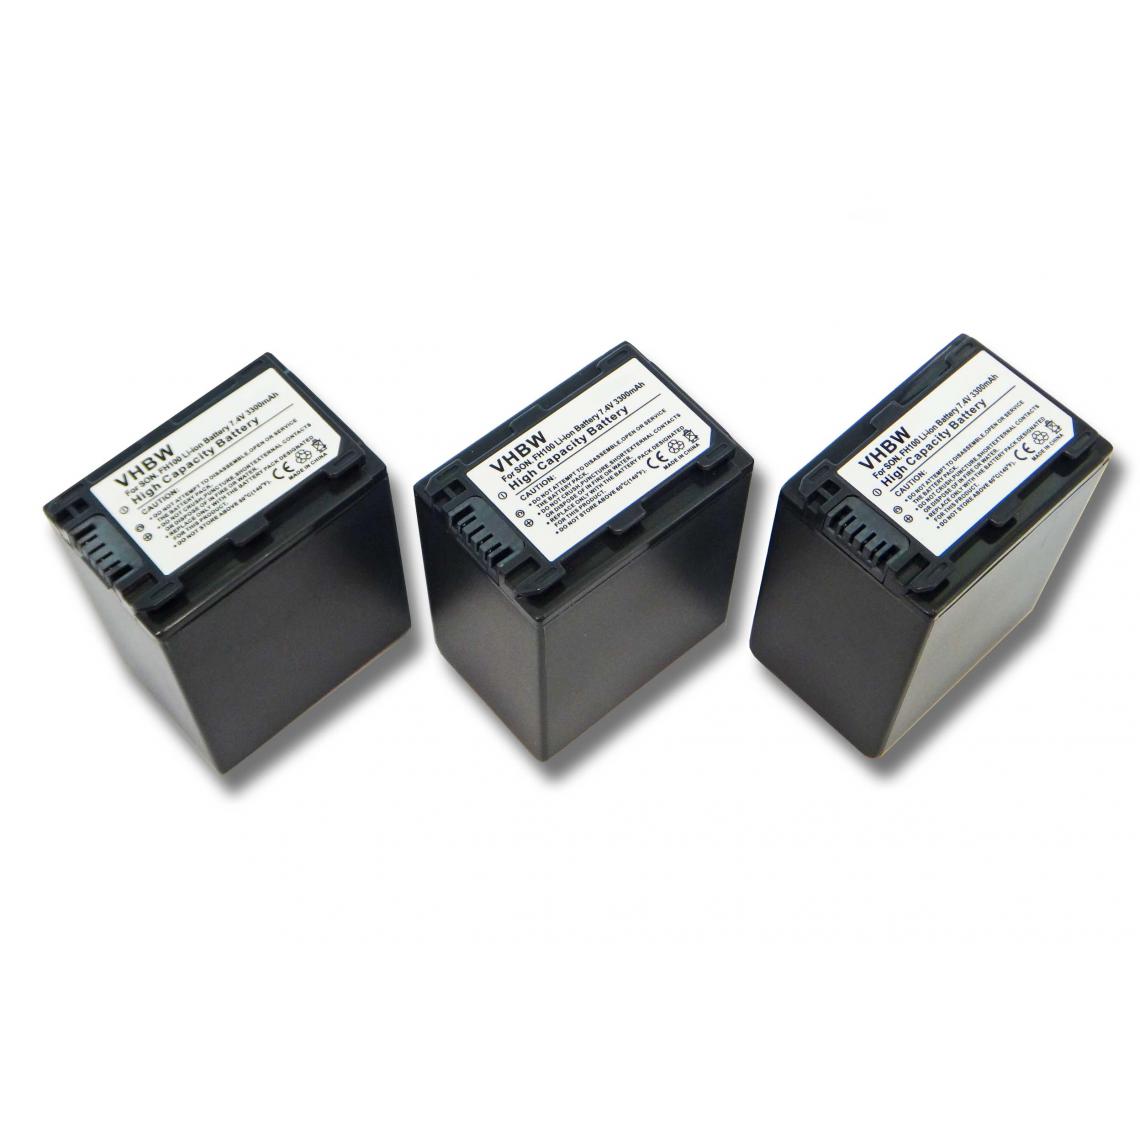 Vhbw - vhbw 3x batterie compatible avec Sony HDR-SR37E, HDR-SR5(E), HDR-SR7(E), HDR-SR8(E) caméra vidéo (3300mAh, 7,4V, Li-ion) avec puce d'information - Batterie Photo & Video